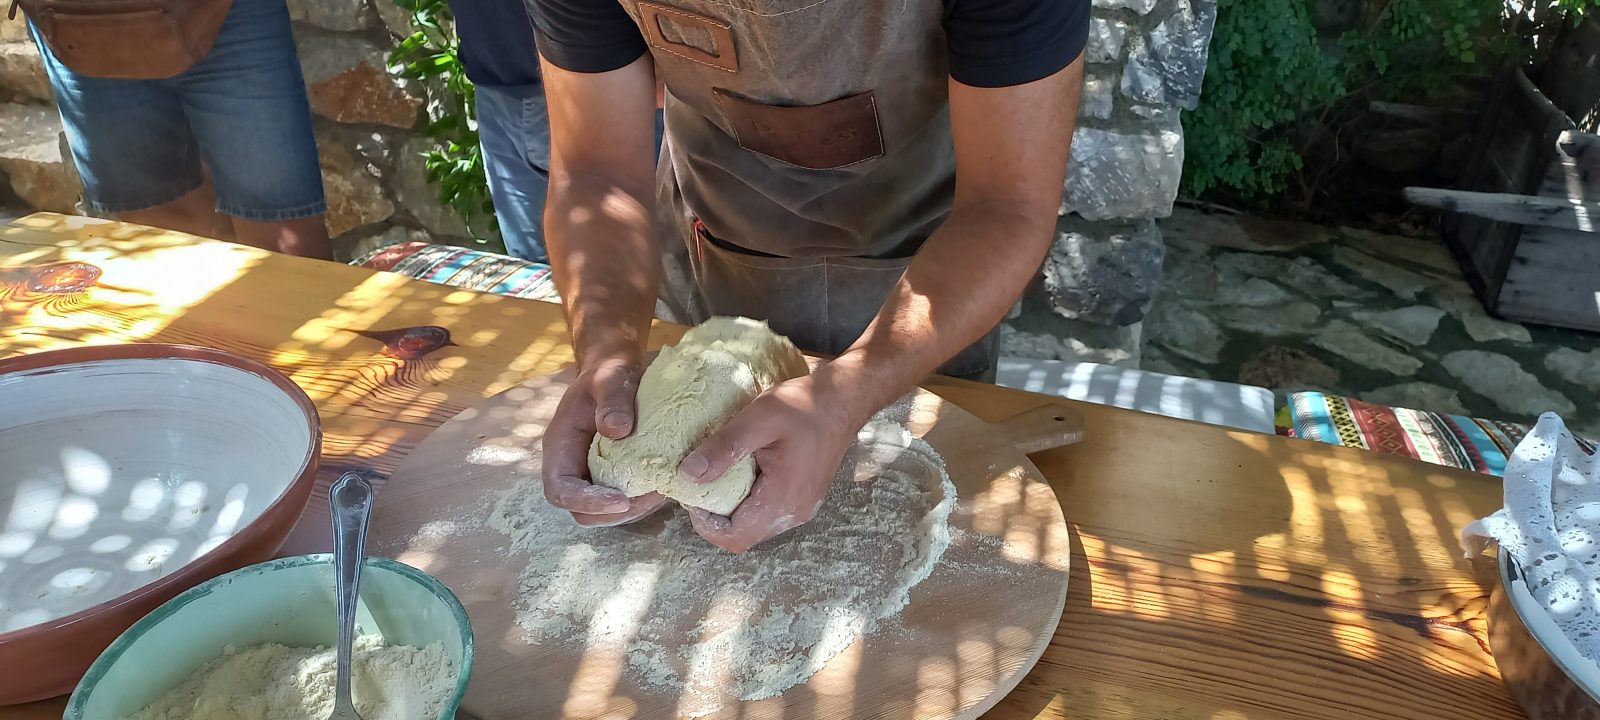 Bread making workshop at Peskesi Kafeneio